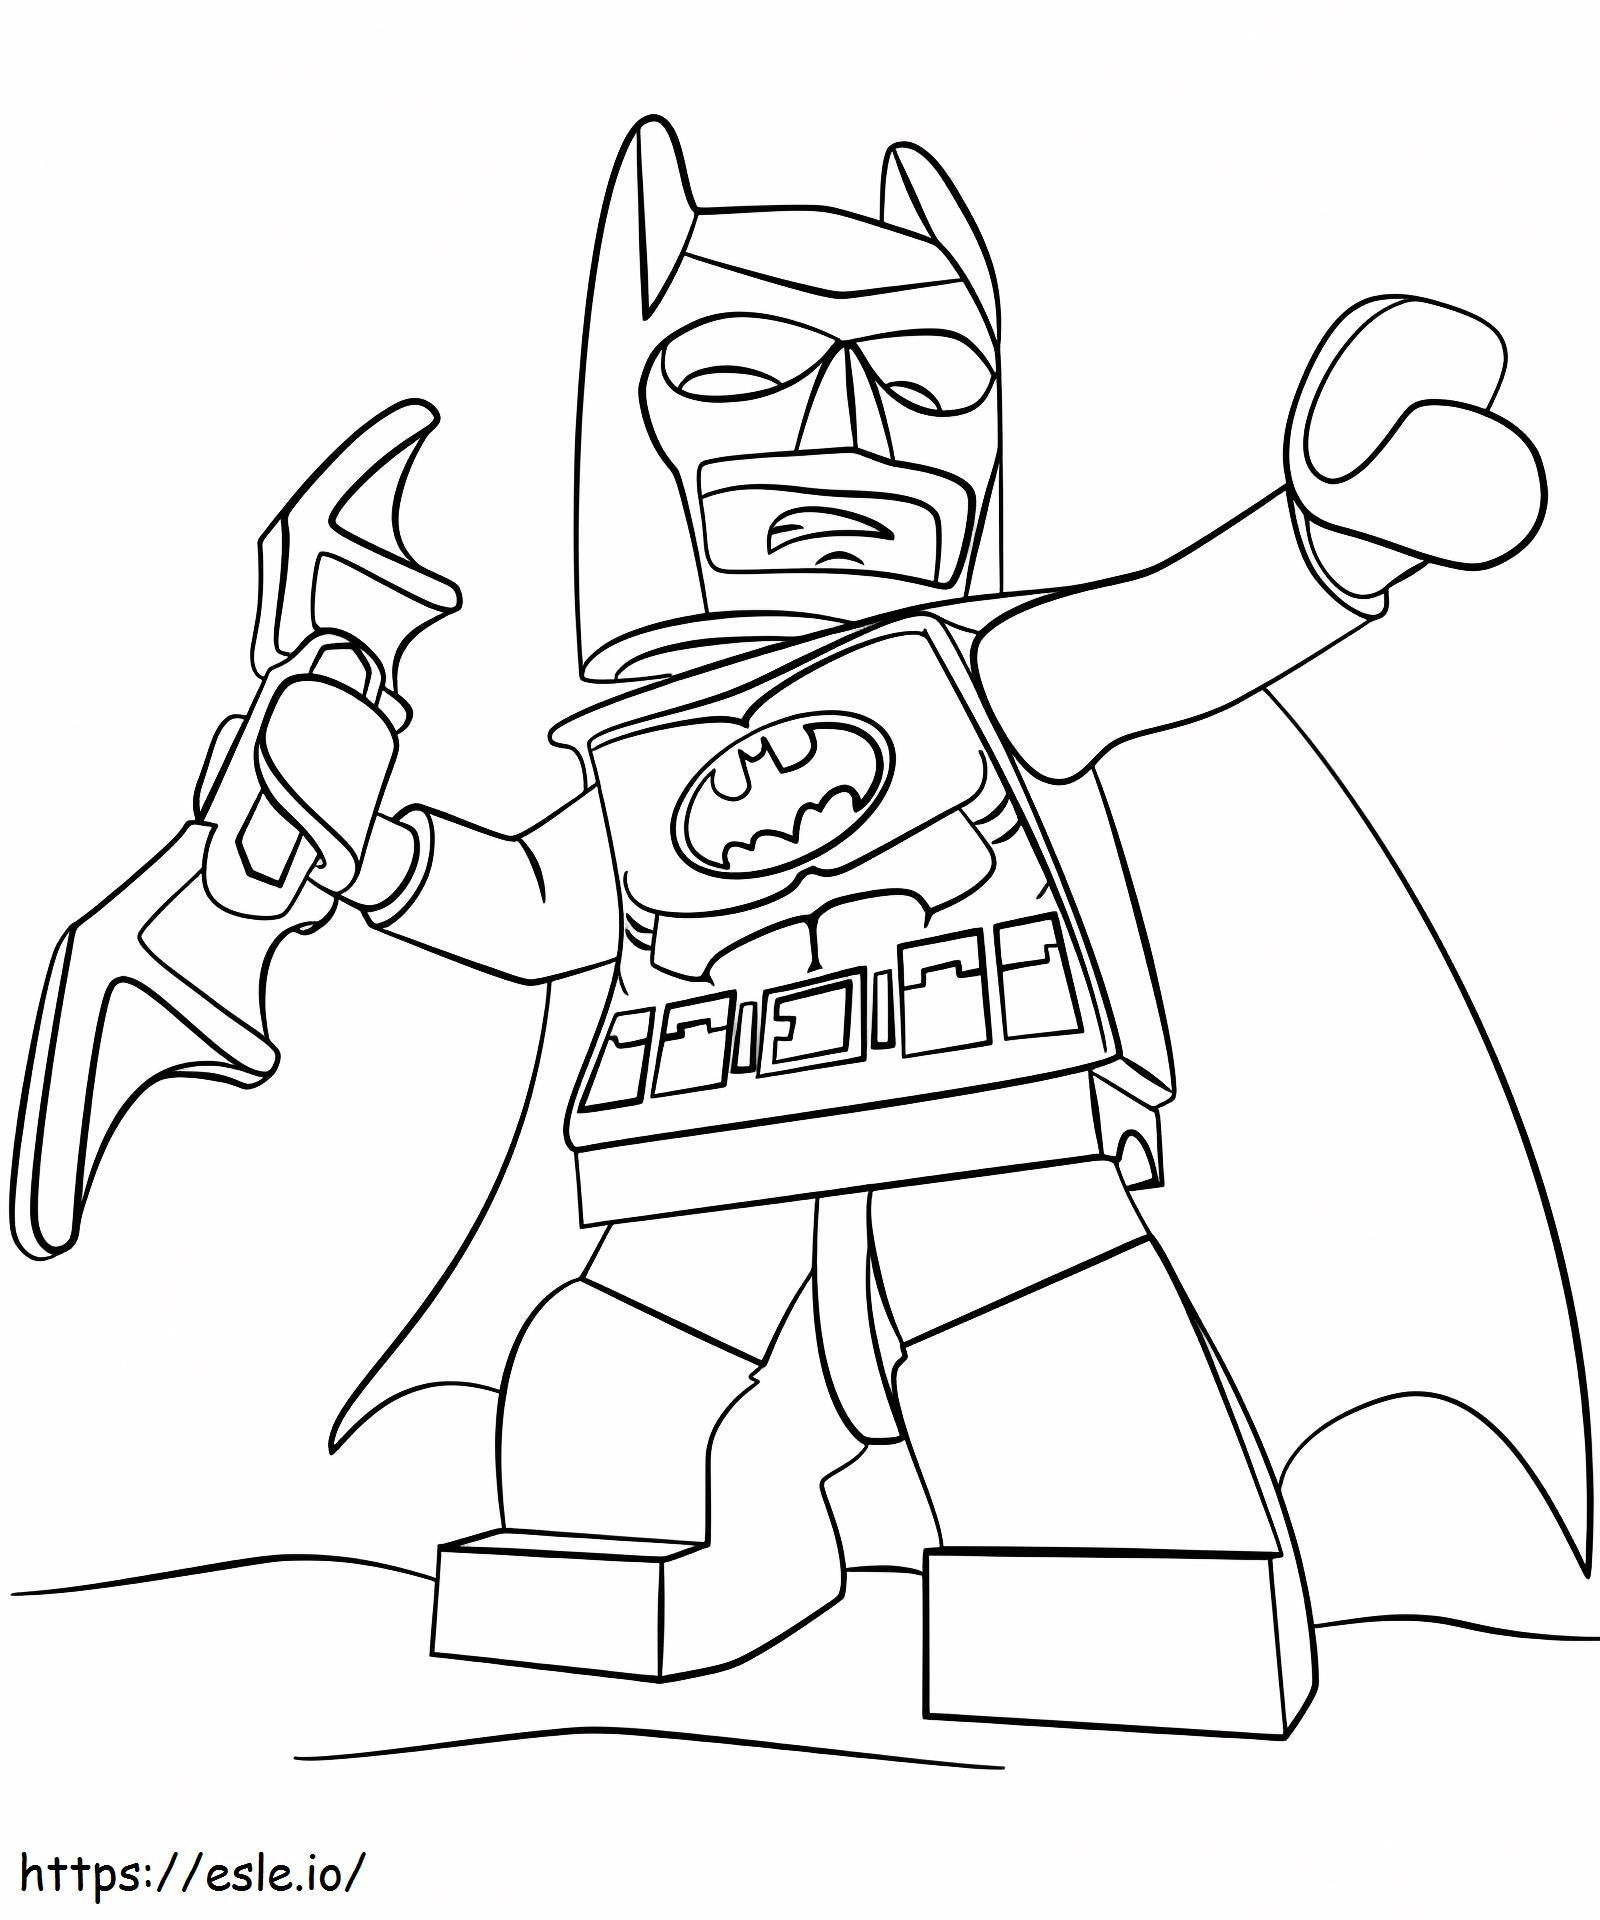  Batman Lego A4 kolorowanka